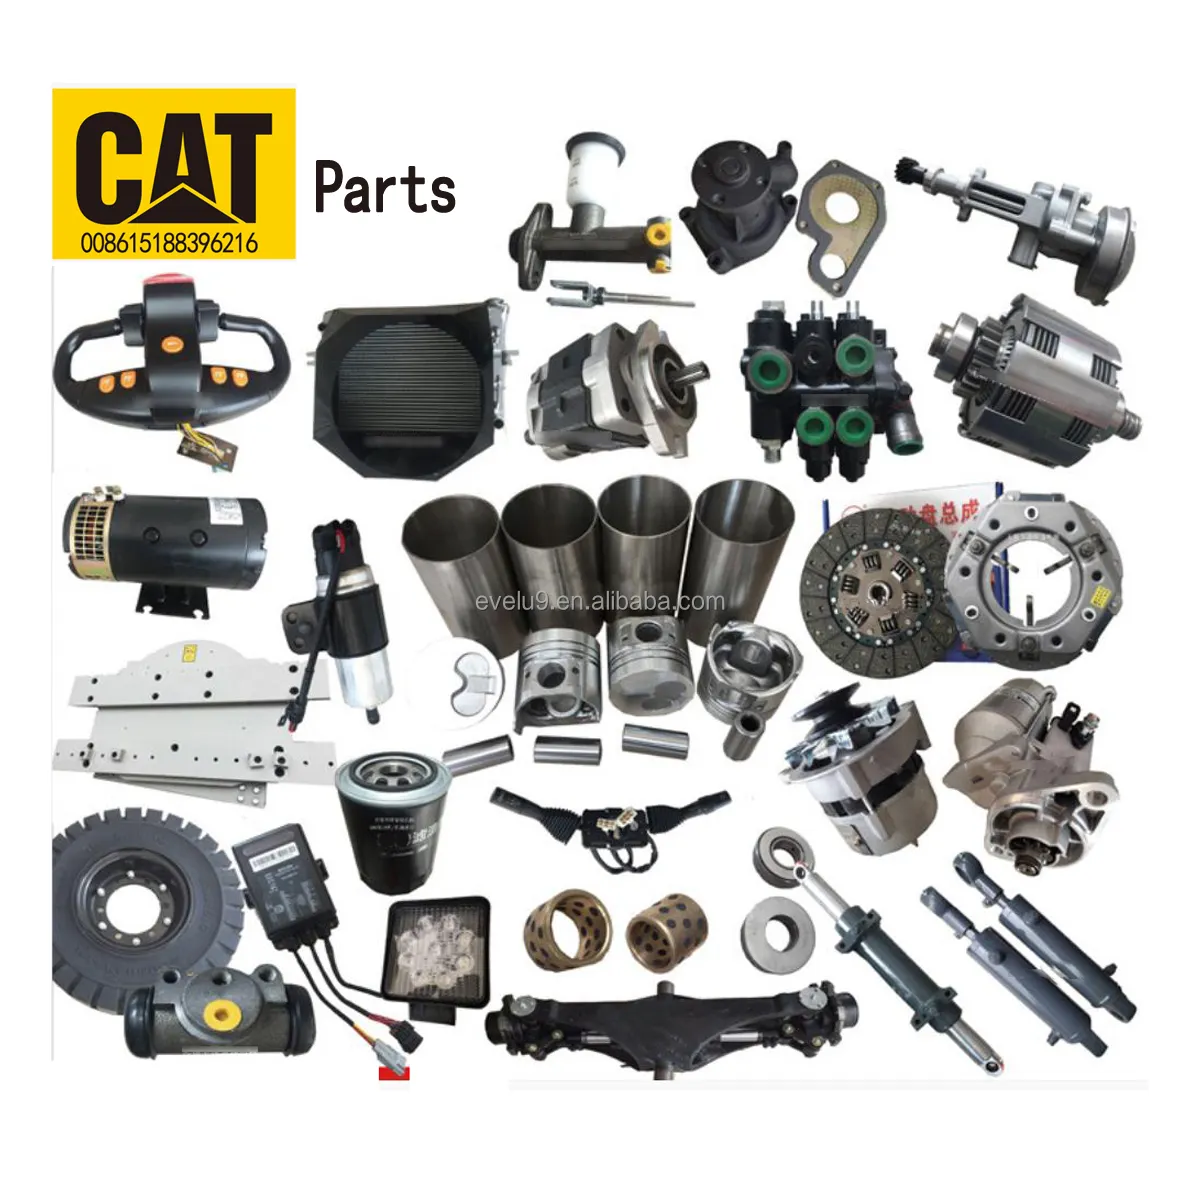 أجزاء محرك القط أجزاء كاتربيلر C4.4